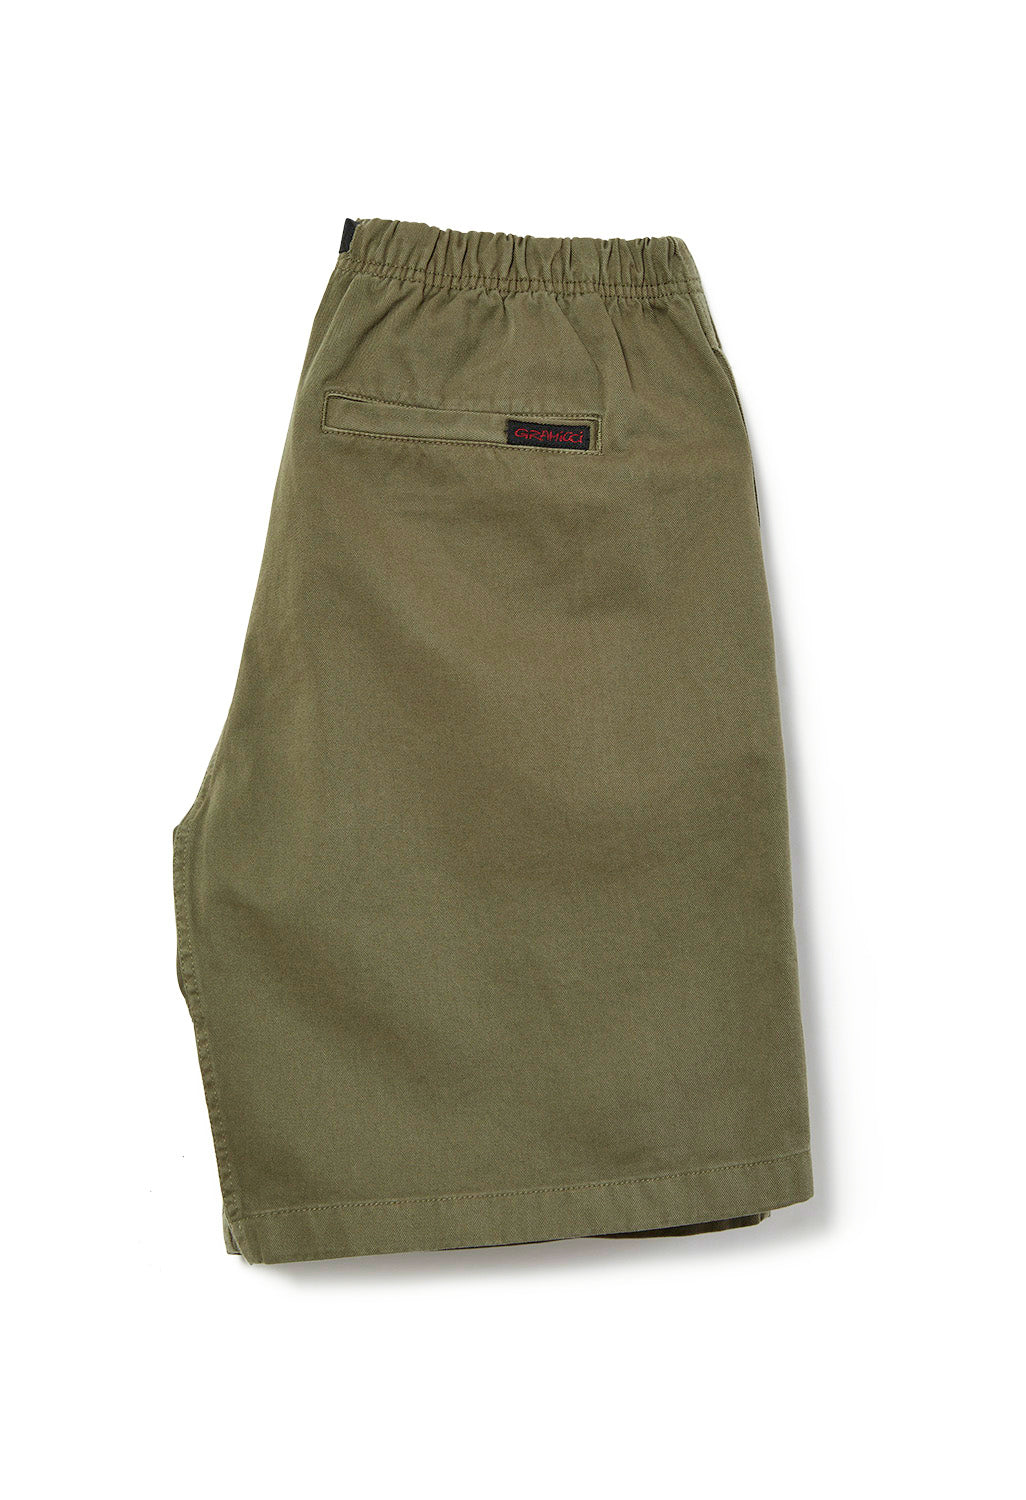 Gramicci Men's G Shorts - Olive